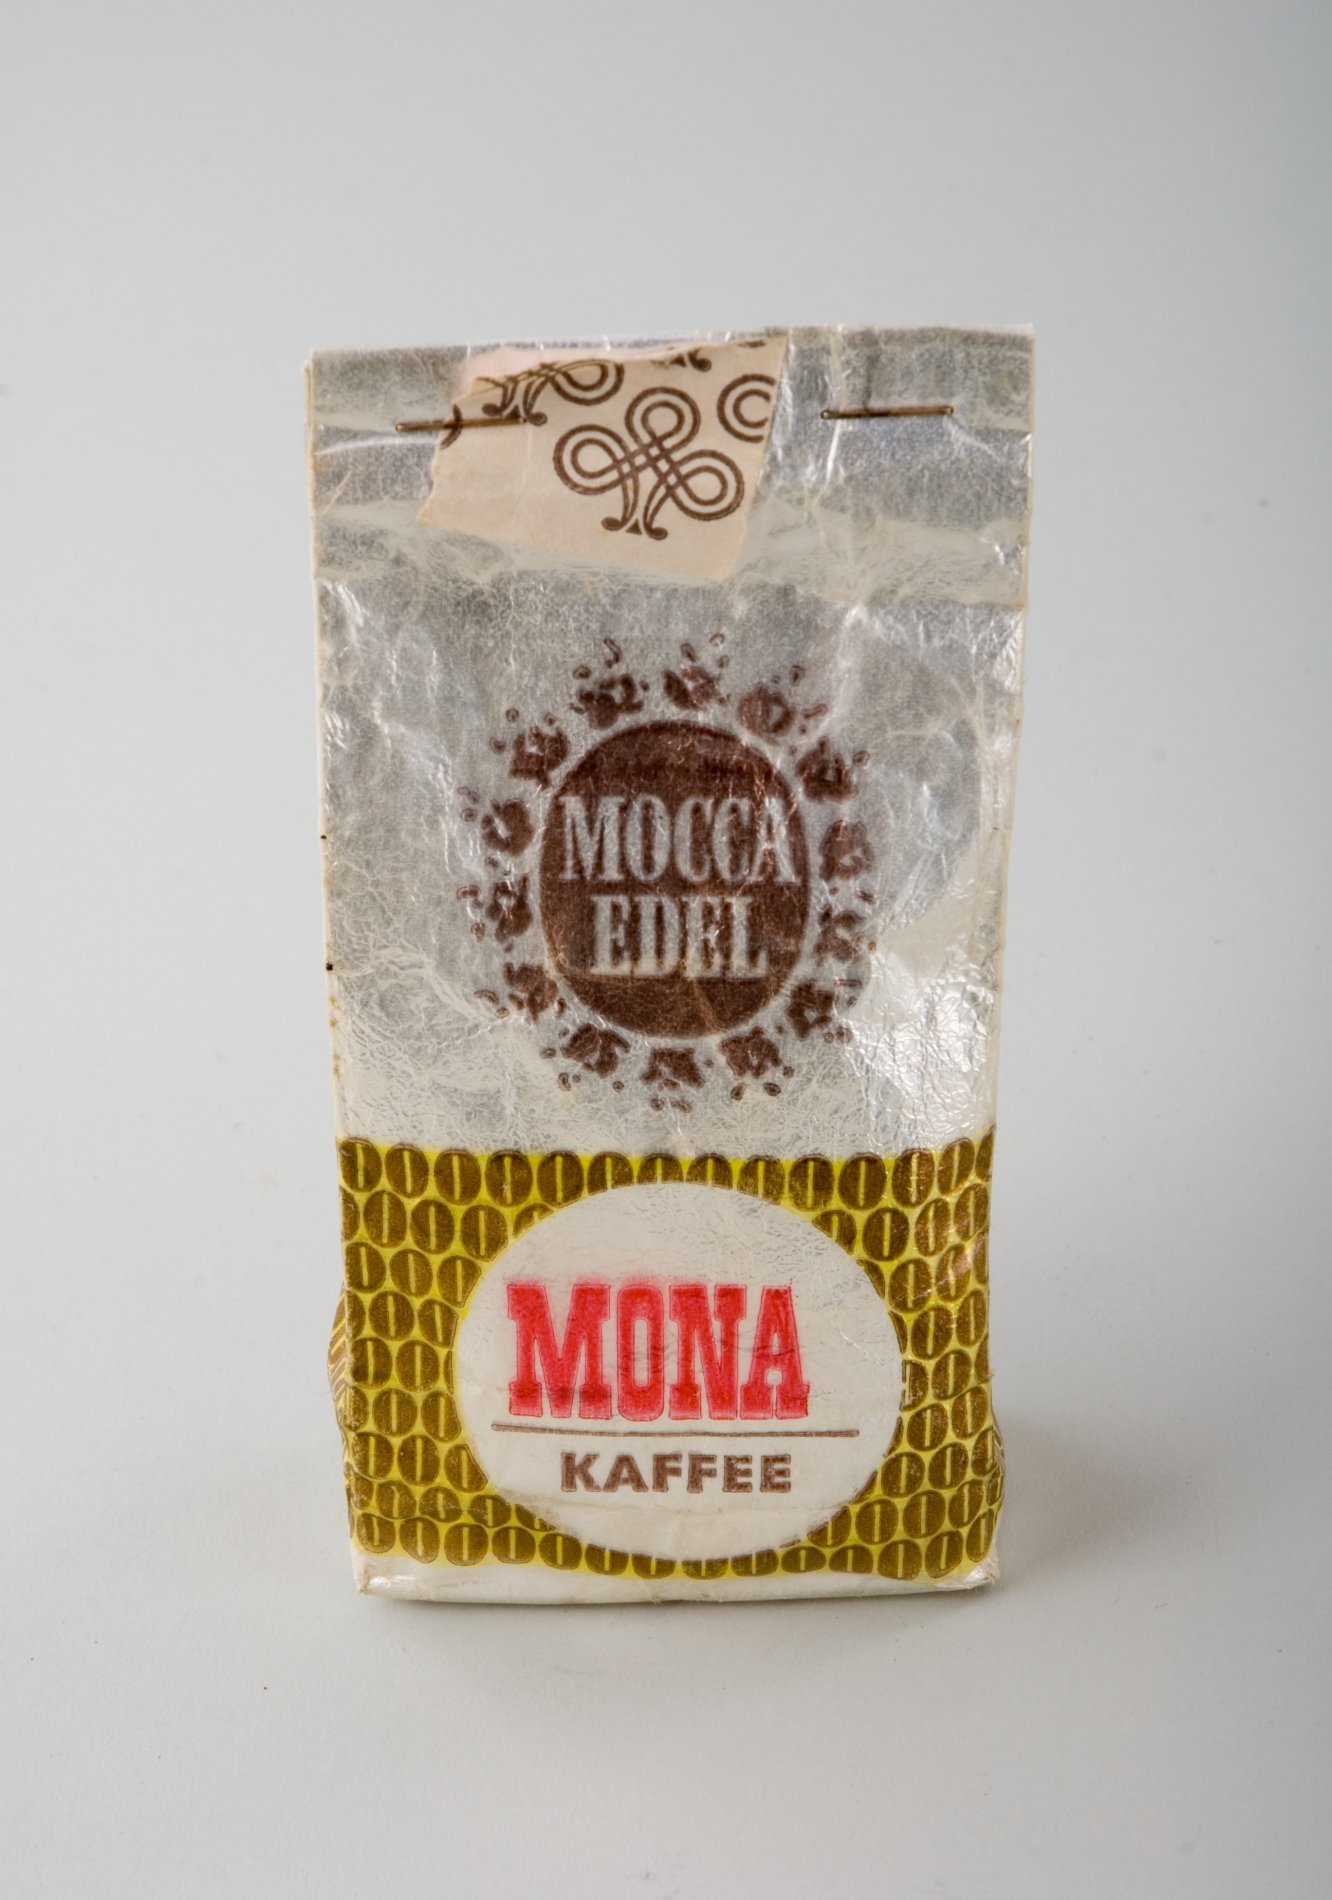 Tüte für Edel-Mocca "MONA" (Stiftung Domäne Dahlem - Landgut und Museum, Weiternutzung nur mit Genehmigung des Museums CC BY-NC-SA)